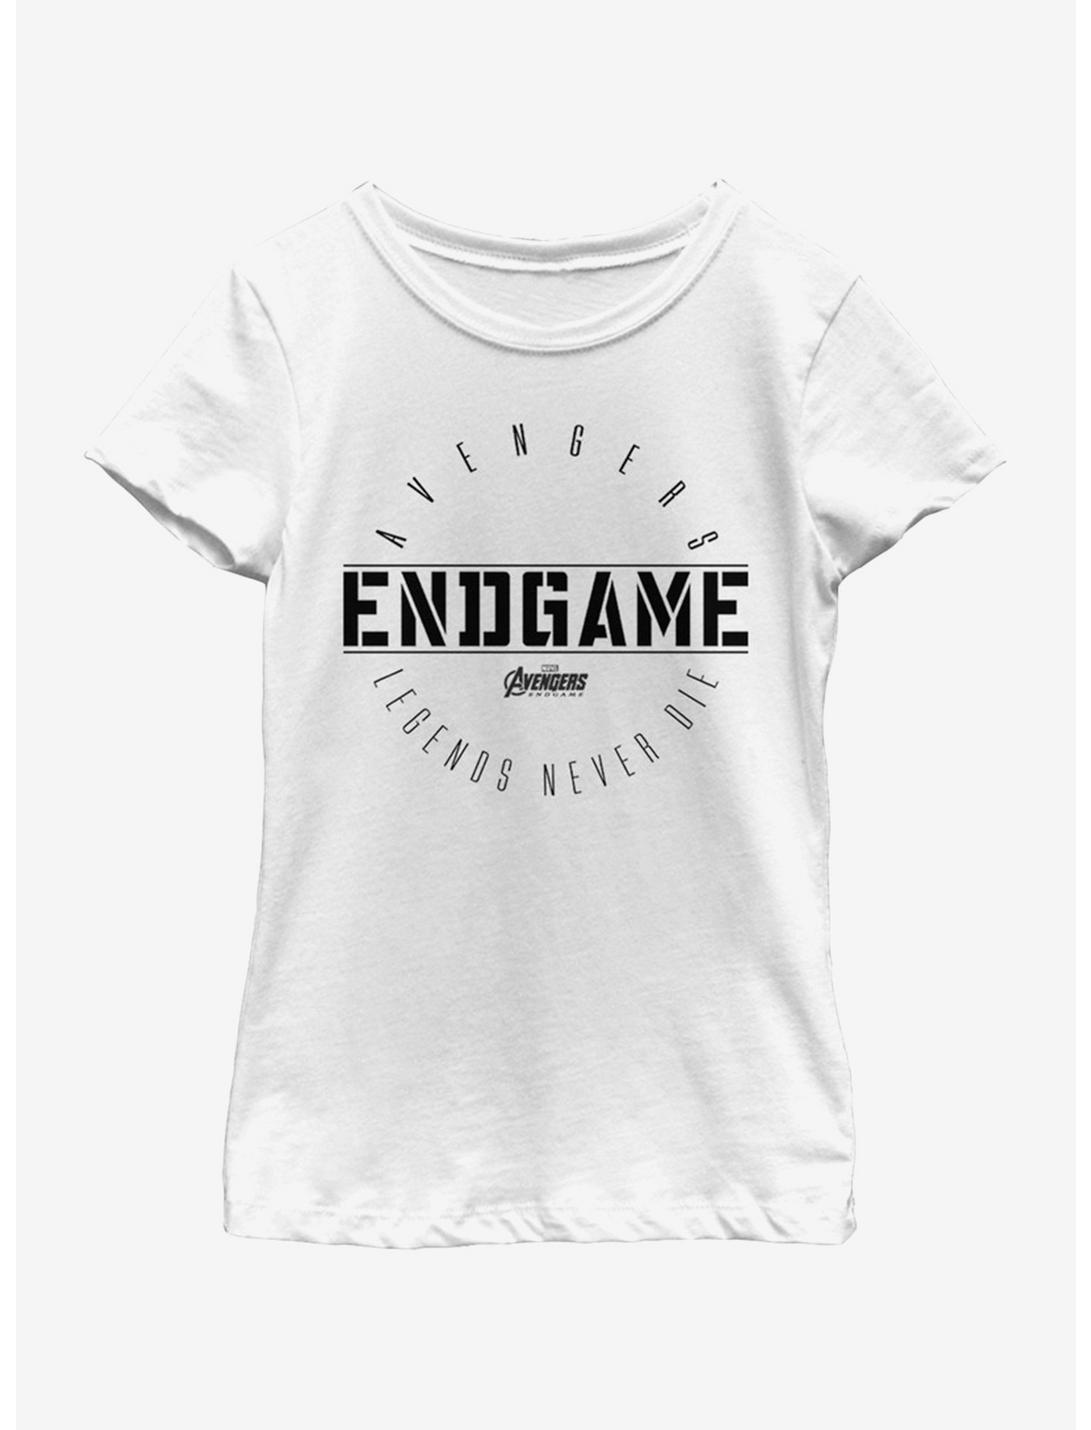 Marvel Avengers: Endgame Last Stand Youth Girls T-Shirt, WHITE, hi-res